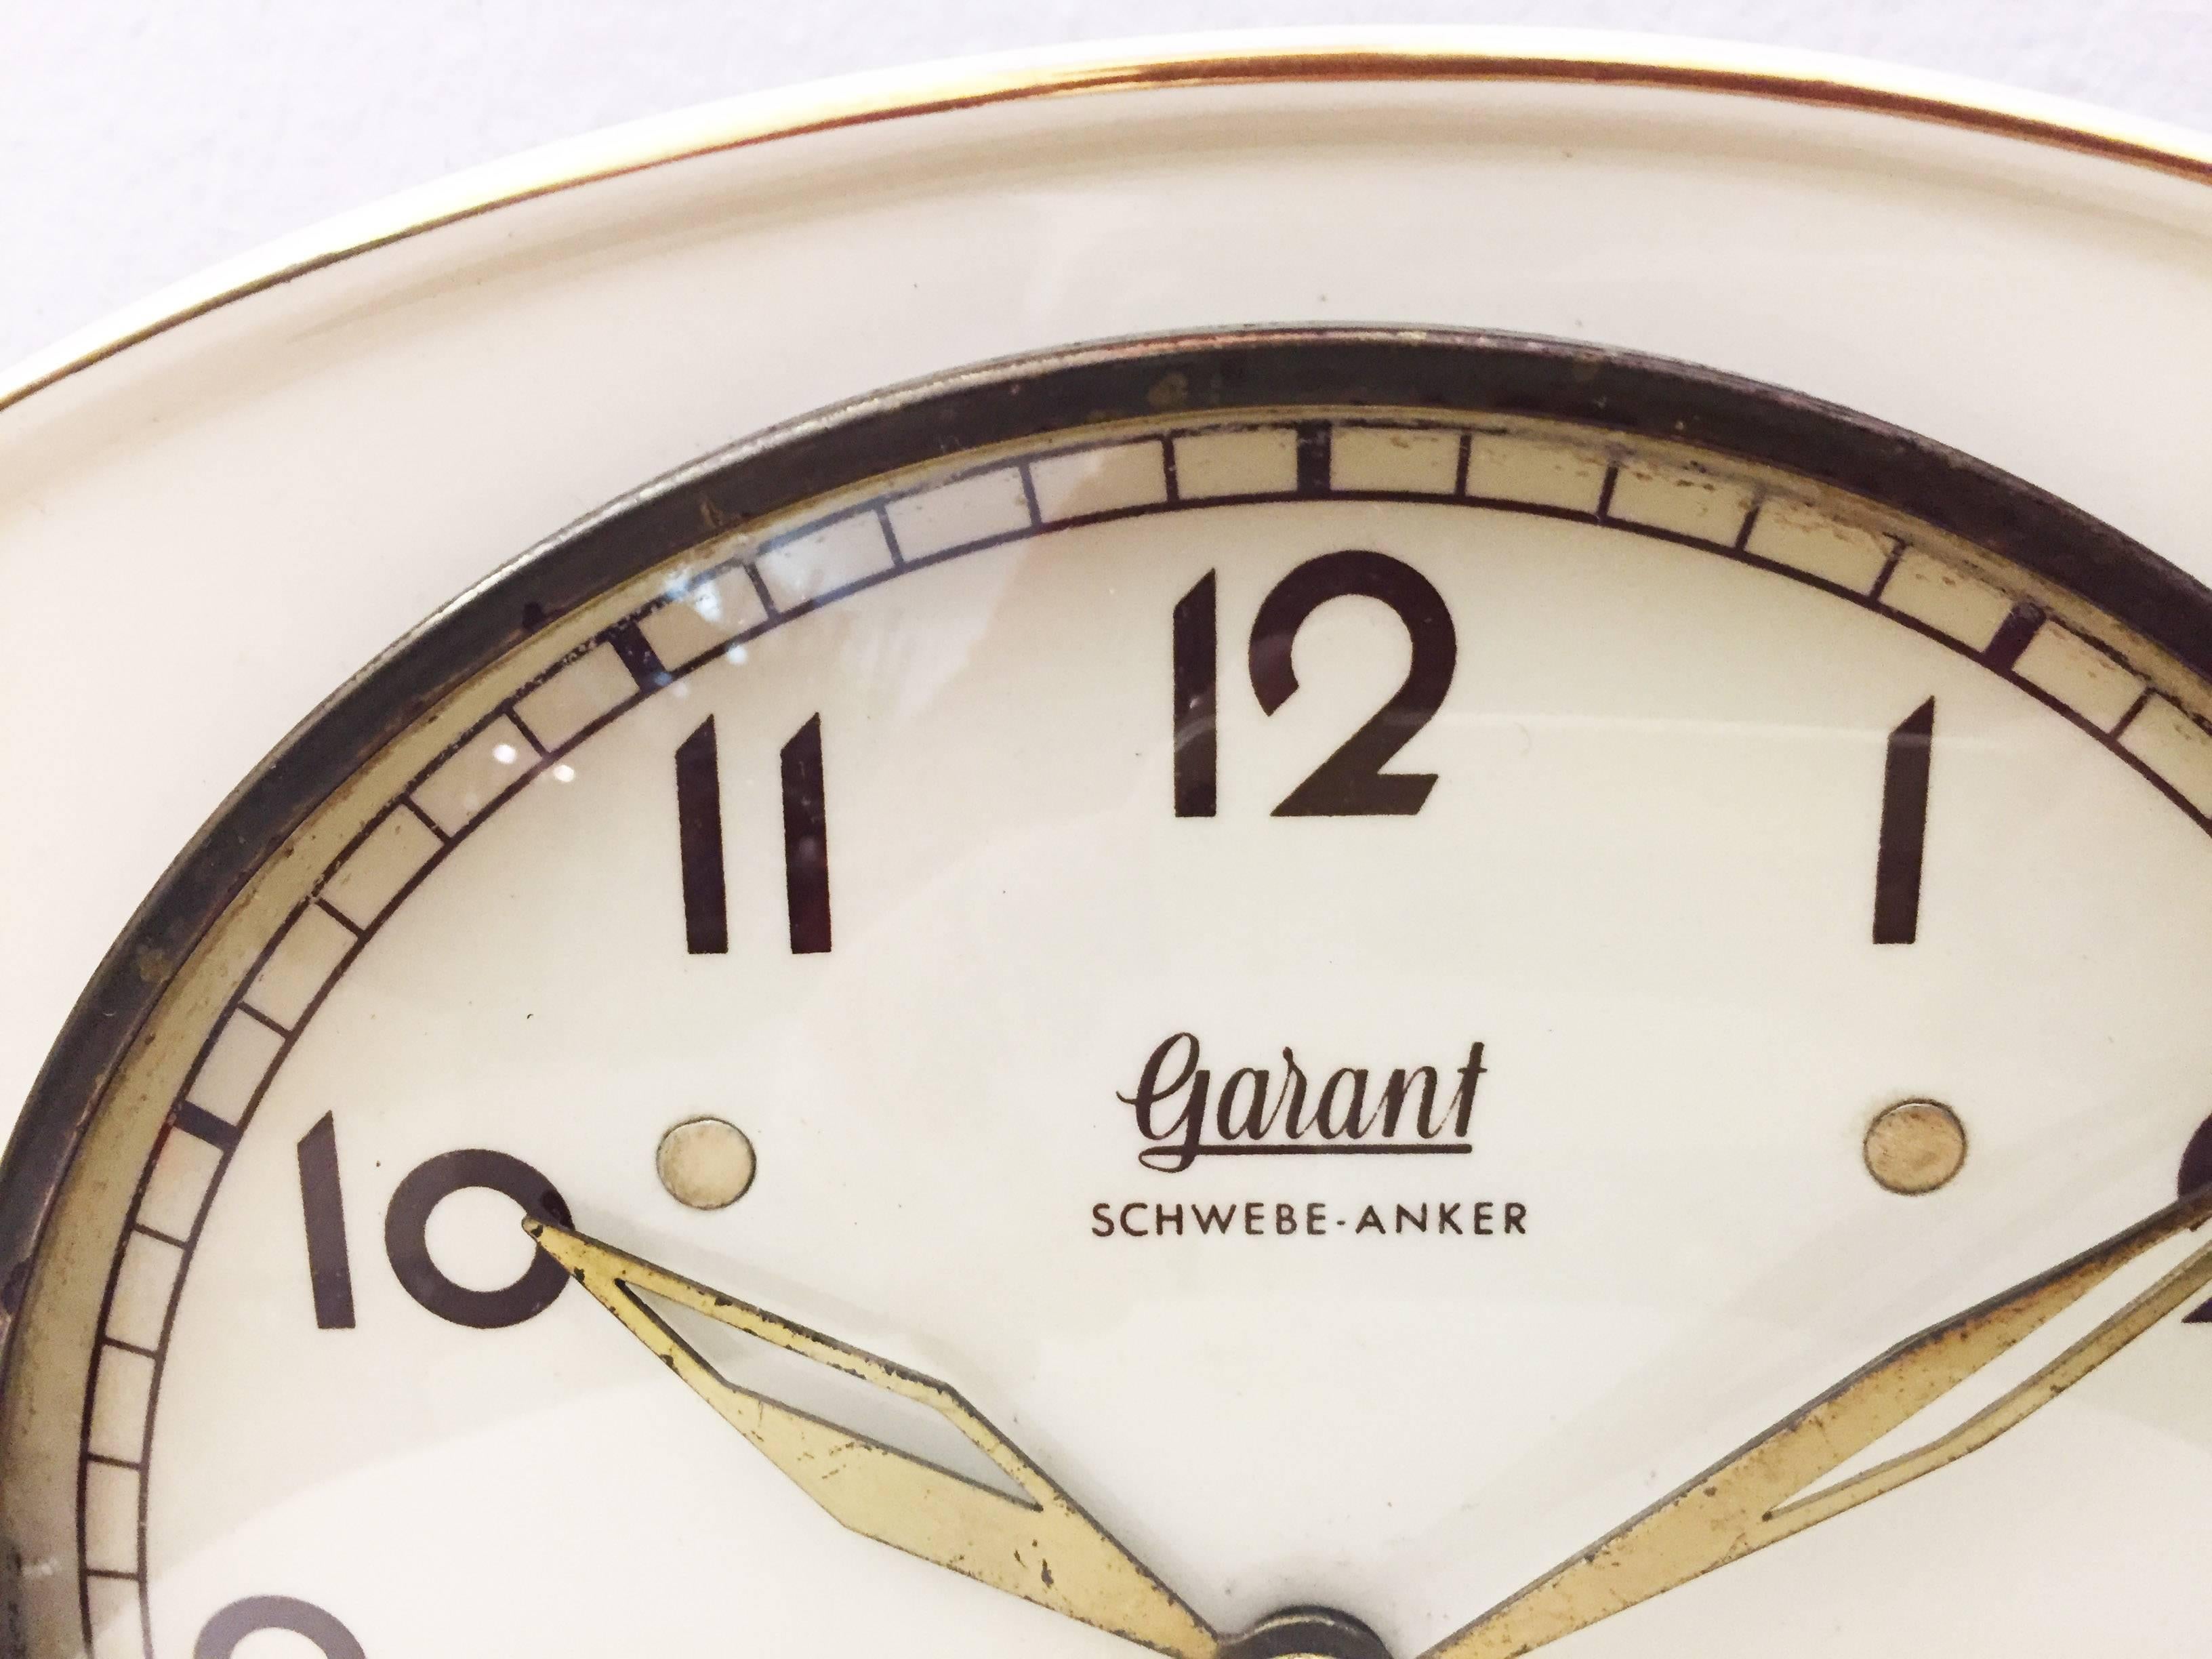 Keramikuhr mit mechanischem Uhrwerk mit Treibanker, hergestellt von Garant (später Hugo Hättich) in Deutschland in den frühen 1950er Jahren. 
Lieferzeit ca. 2-3 Wochen.
Das Uhrwerk wird vor der Auslieferung von einem Uhrmacher überprüft. Auf